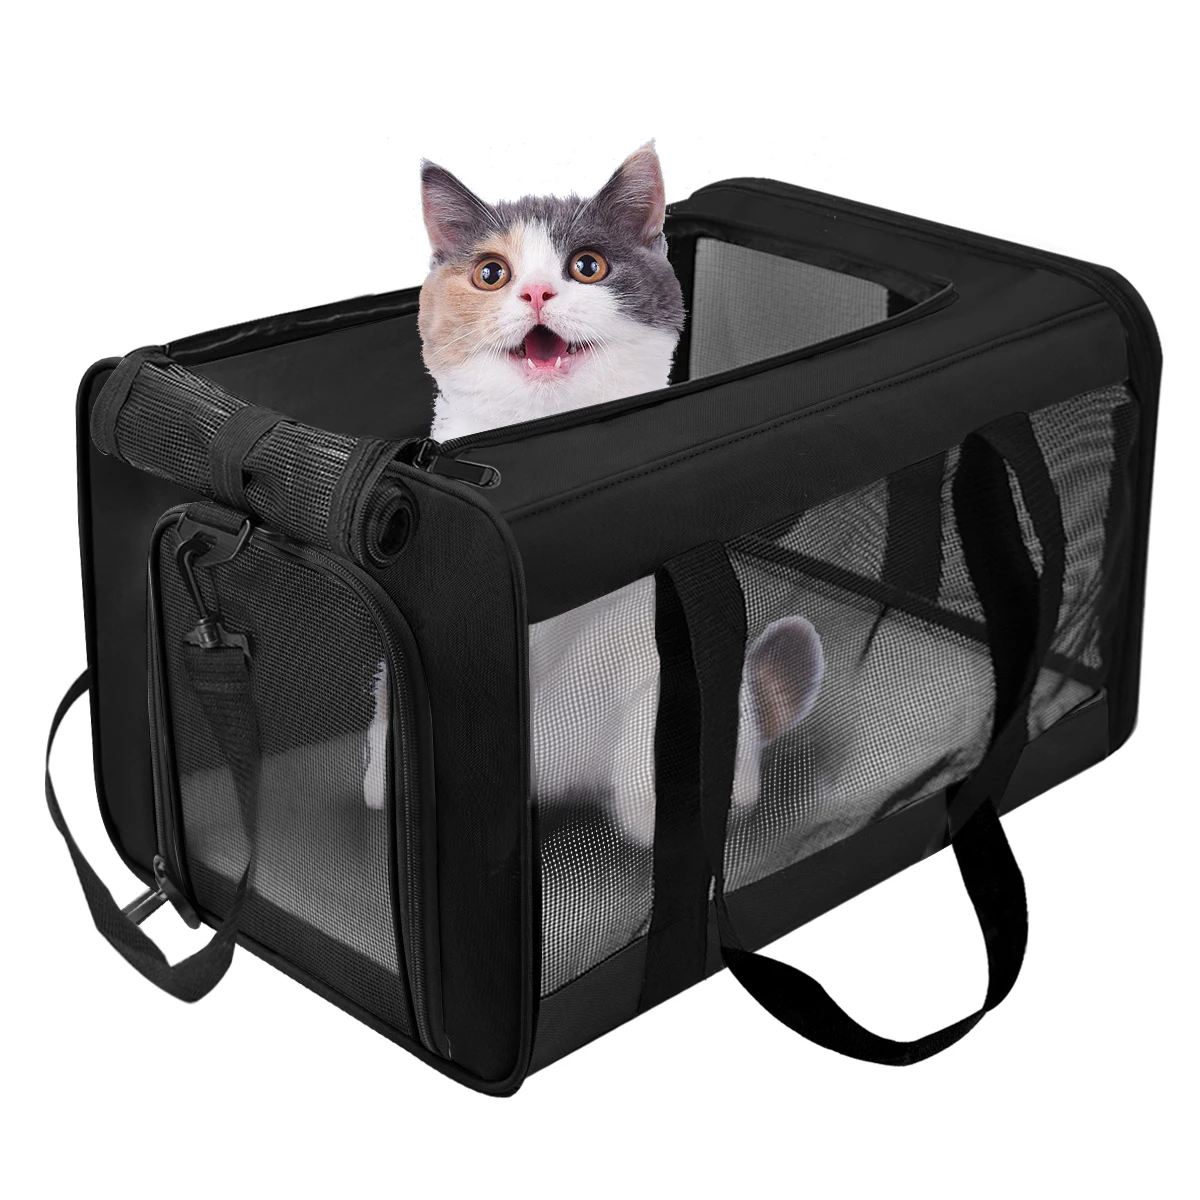 

Soft Side Carrier for Cat Pet Conveyor Handbag Airline Approved Foldable Cat Carrier Backpack Reflective Tapes Cat Transport Bag